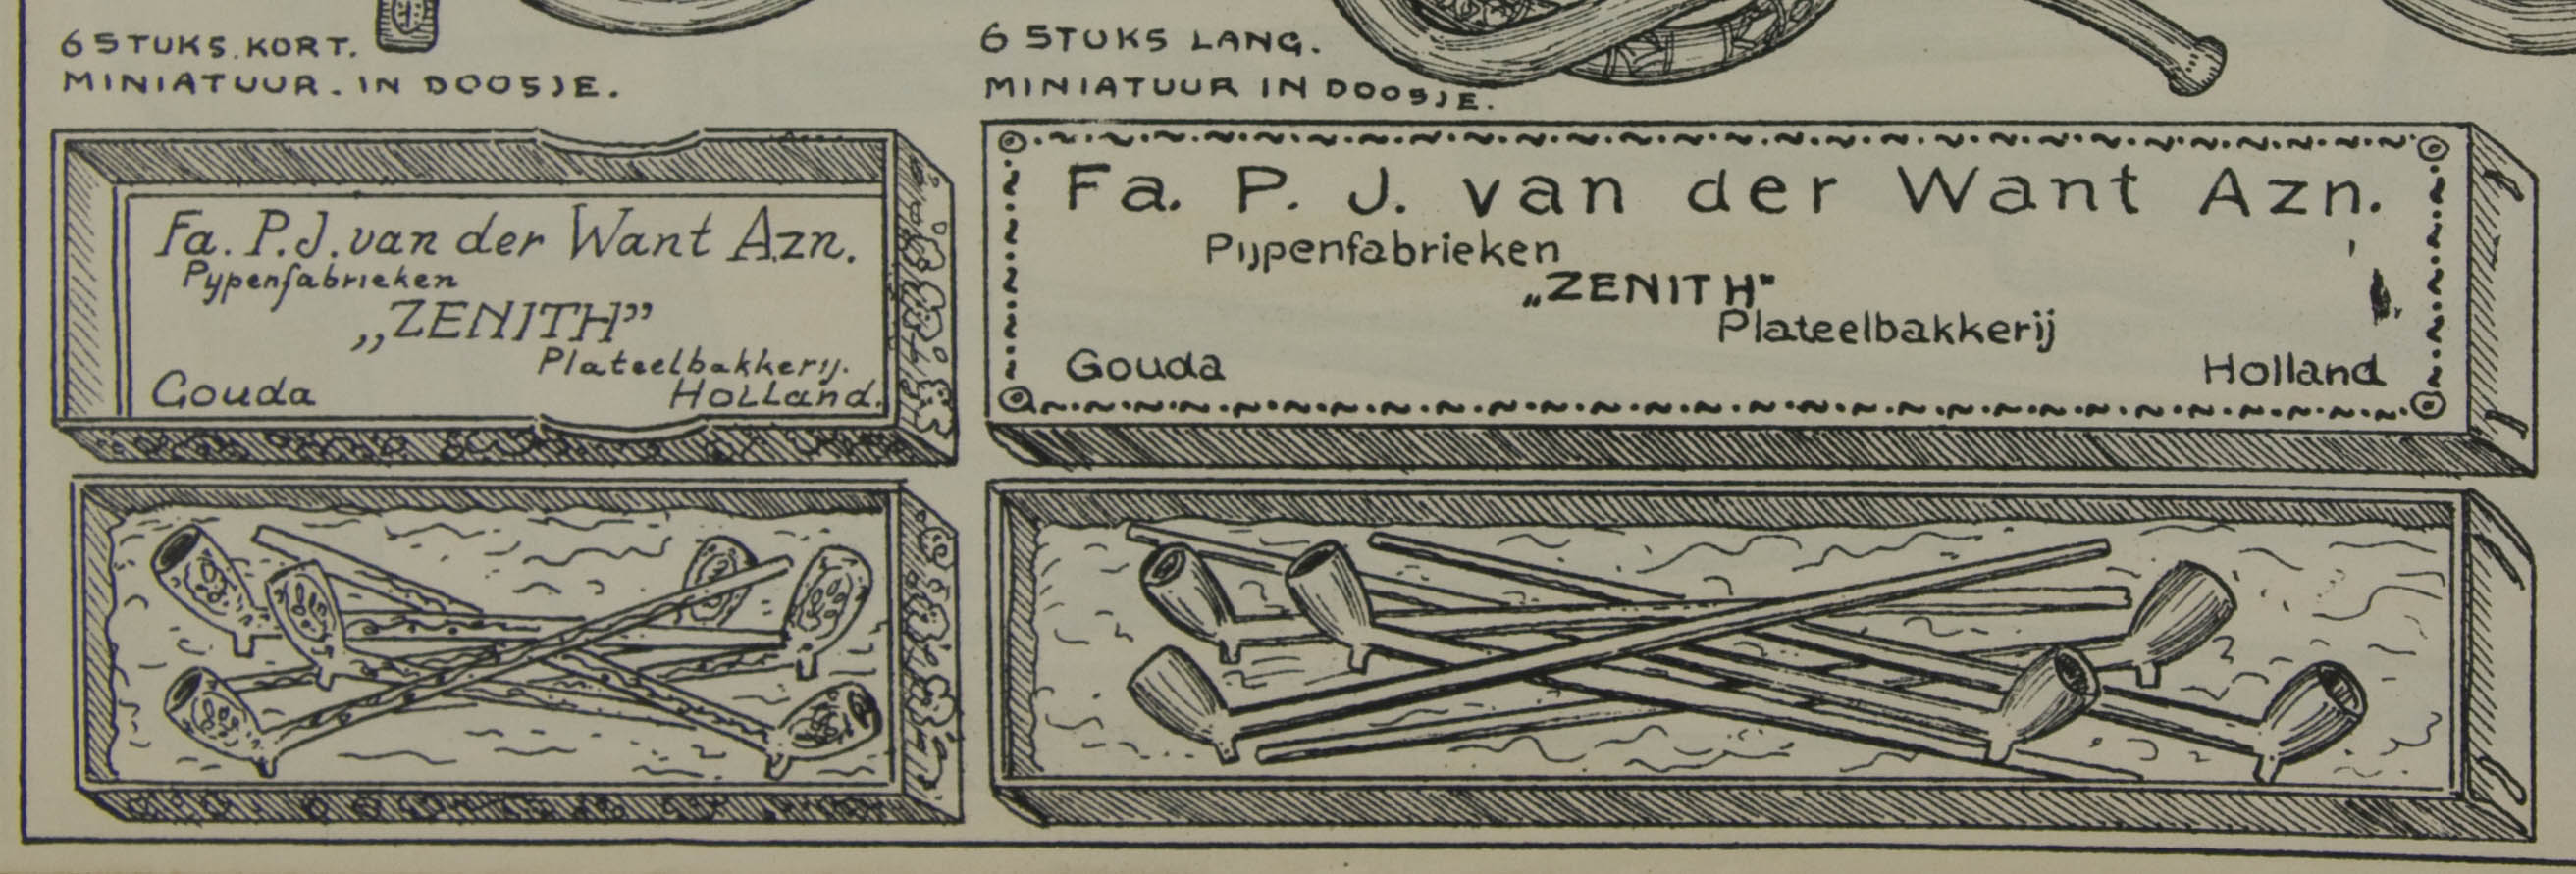 16-19.356a  arch-catalogus-zenith-29